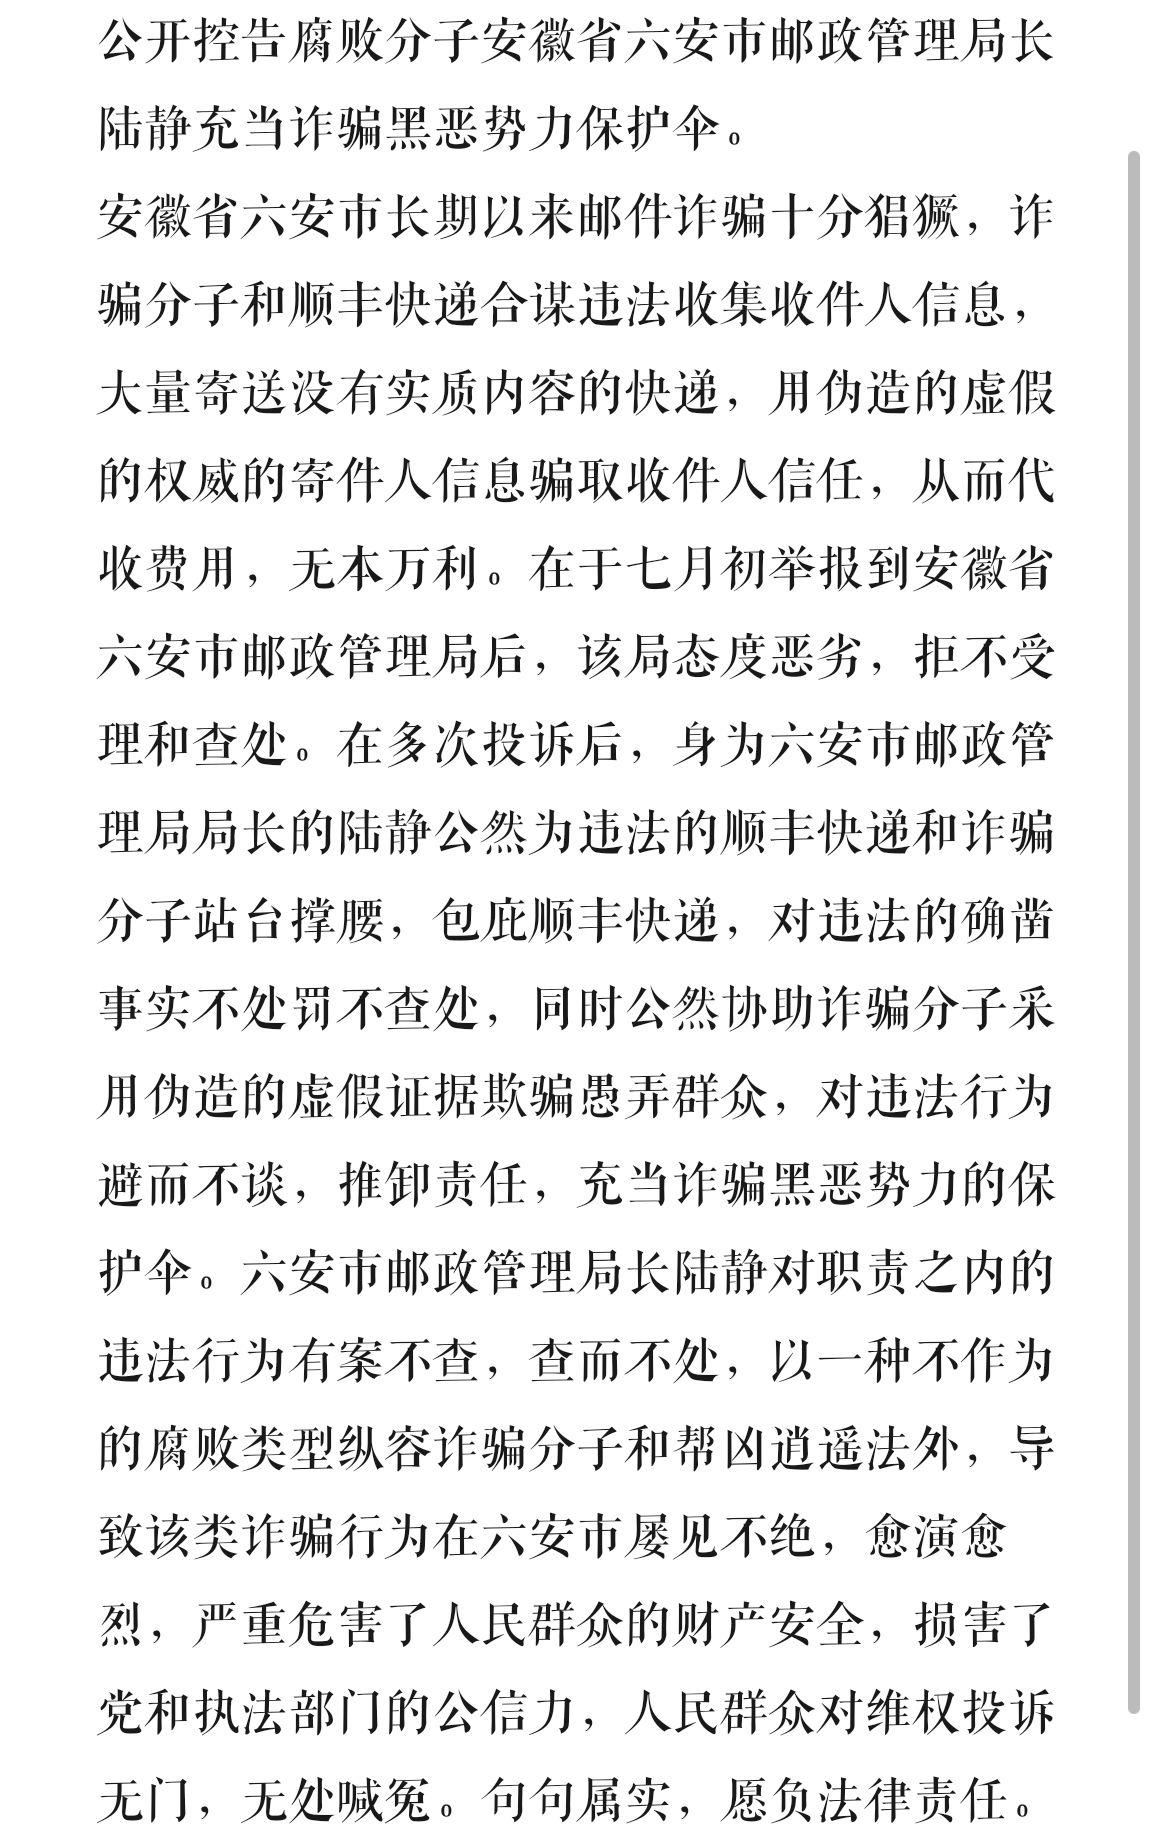 控告腐败分子安徽省六安市邮政管理局长陆静充当诈骗黑恶势力保护伞